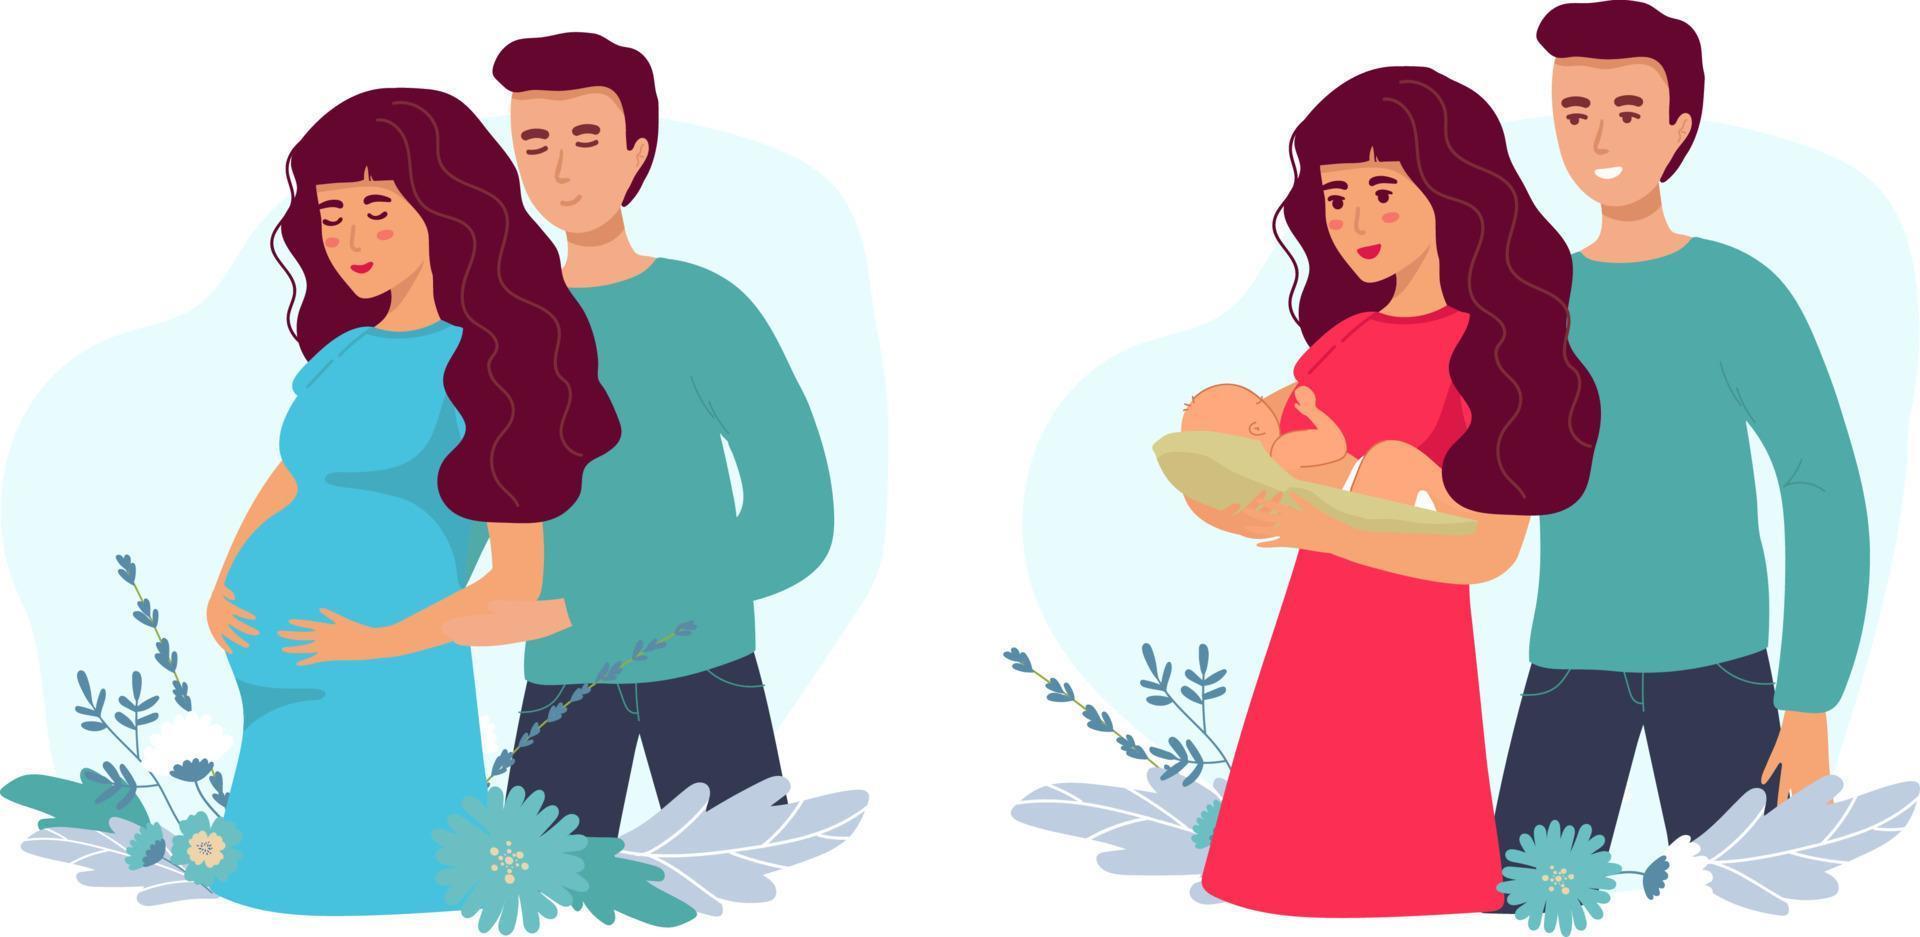 reeks van illustraties over zwangerschap en moederschap. zwanger vrouw met buik met pa. dame met een pasgeboren baby. vlak voorraad vector illustratie.